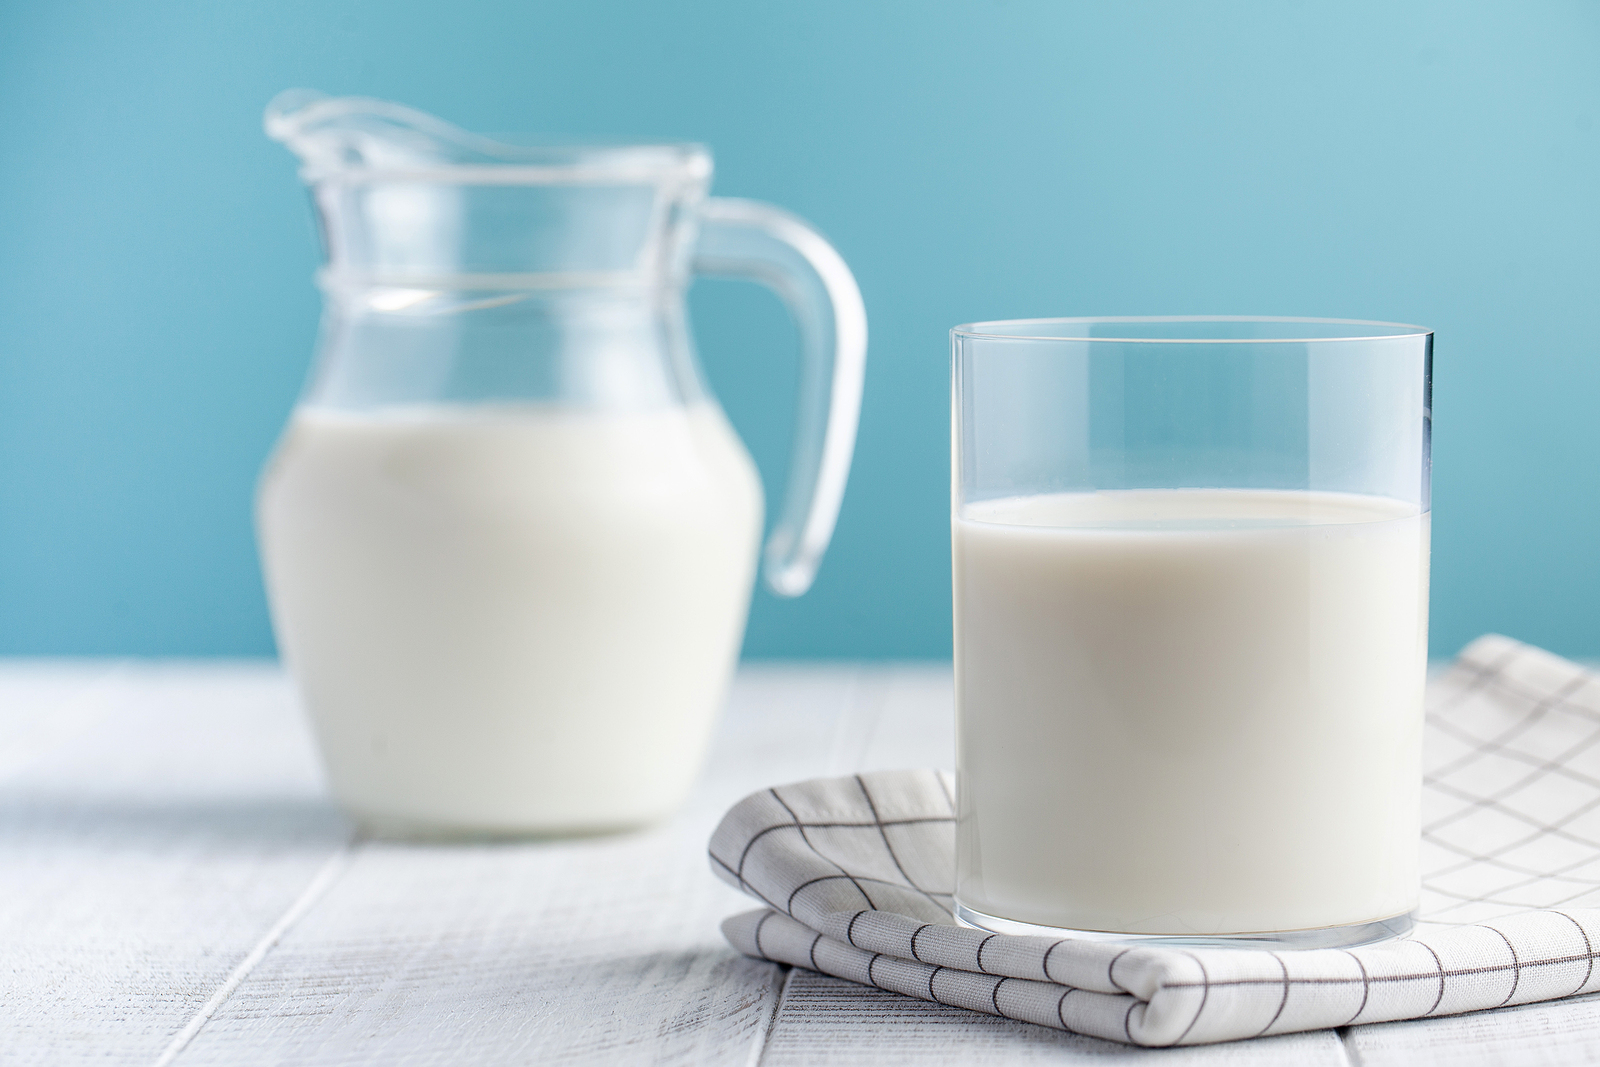 Polskie mleko podbija zagraniczne rynki